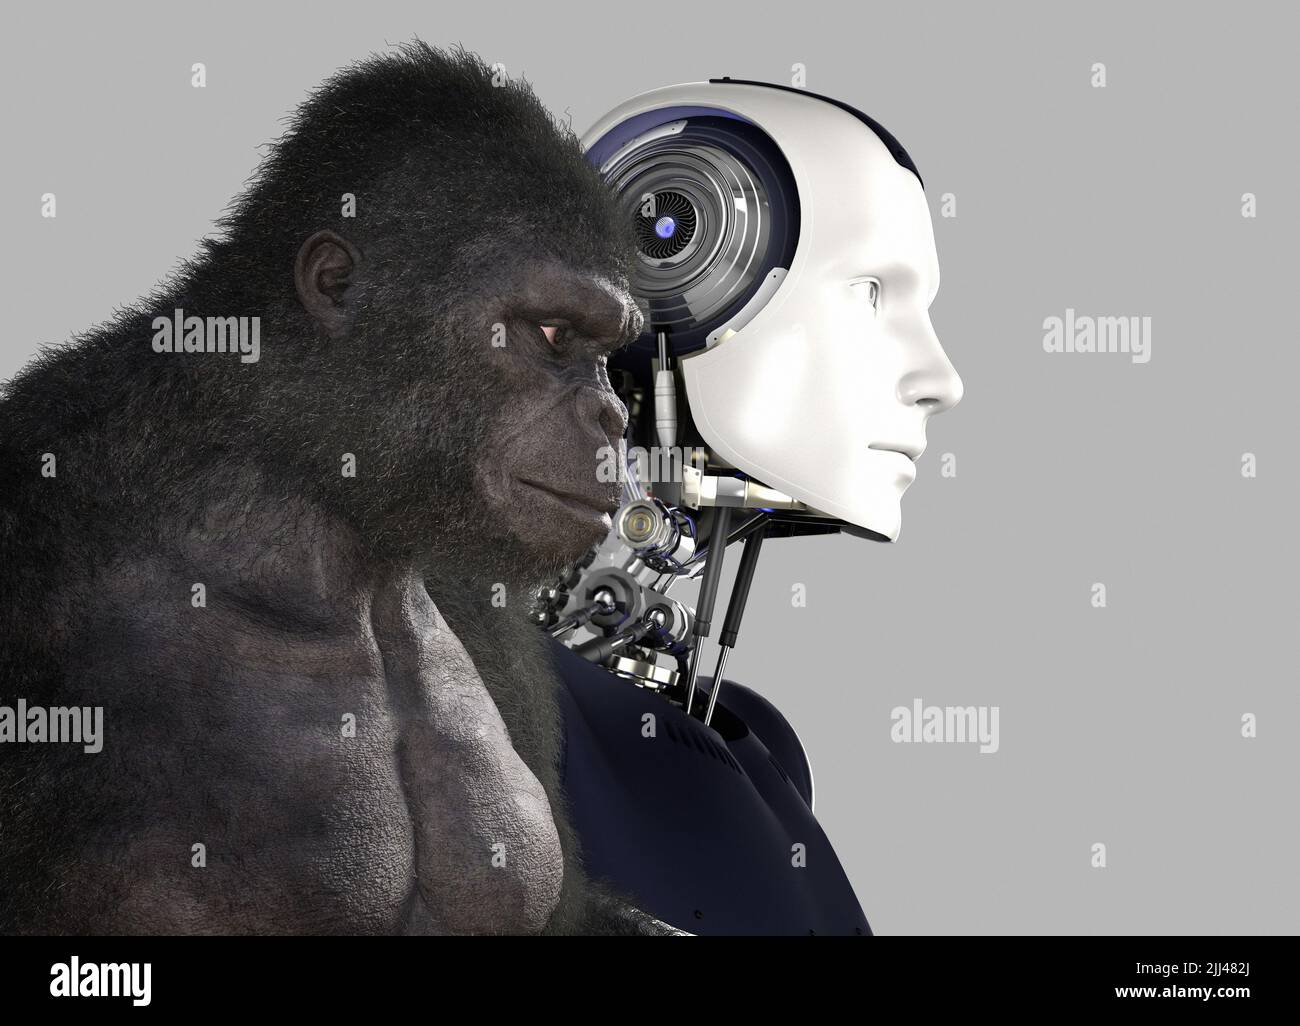 APE et un robot, illustration. Banque D'Images